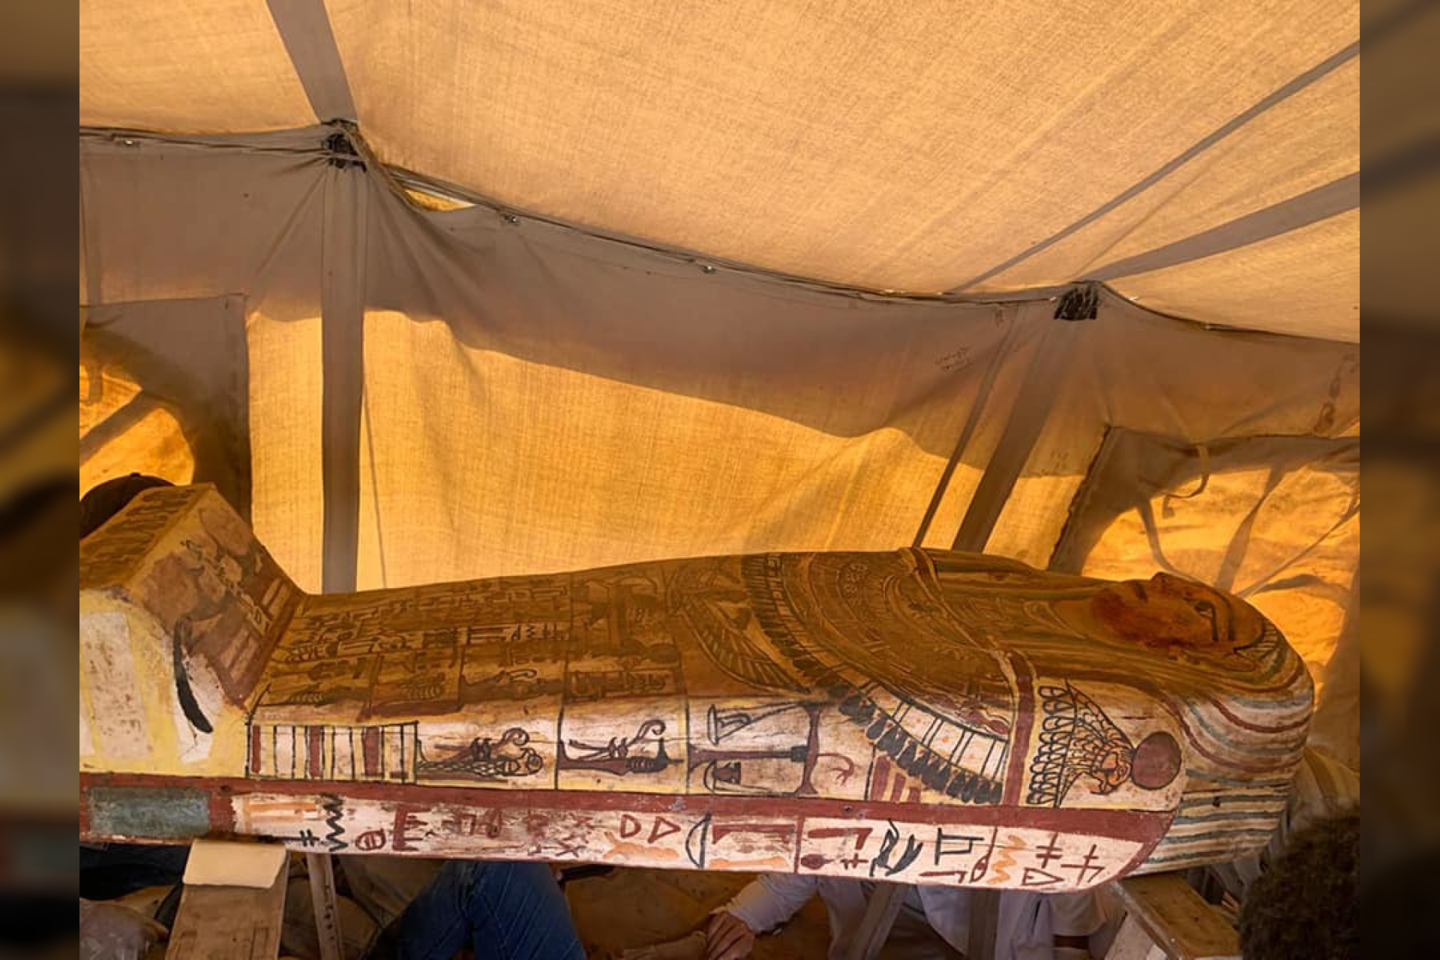  Egipto Senienų ministerija sekmadienį paskelbė, kad Sakaros (Saqqara) nekropolyje į pietus nuo Kairo buvo rasta dar 14 sarkofagų.<br>Egipto Senienų ministerijos nuotr.